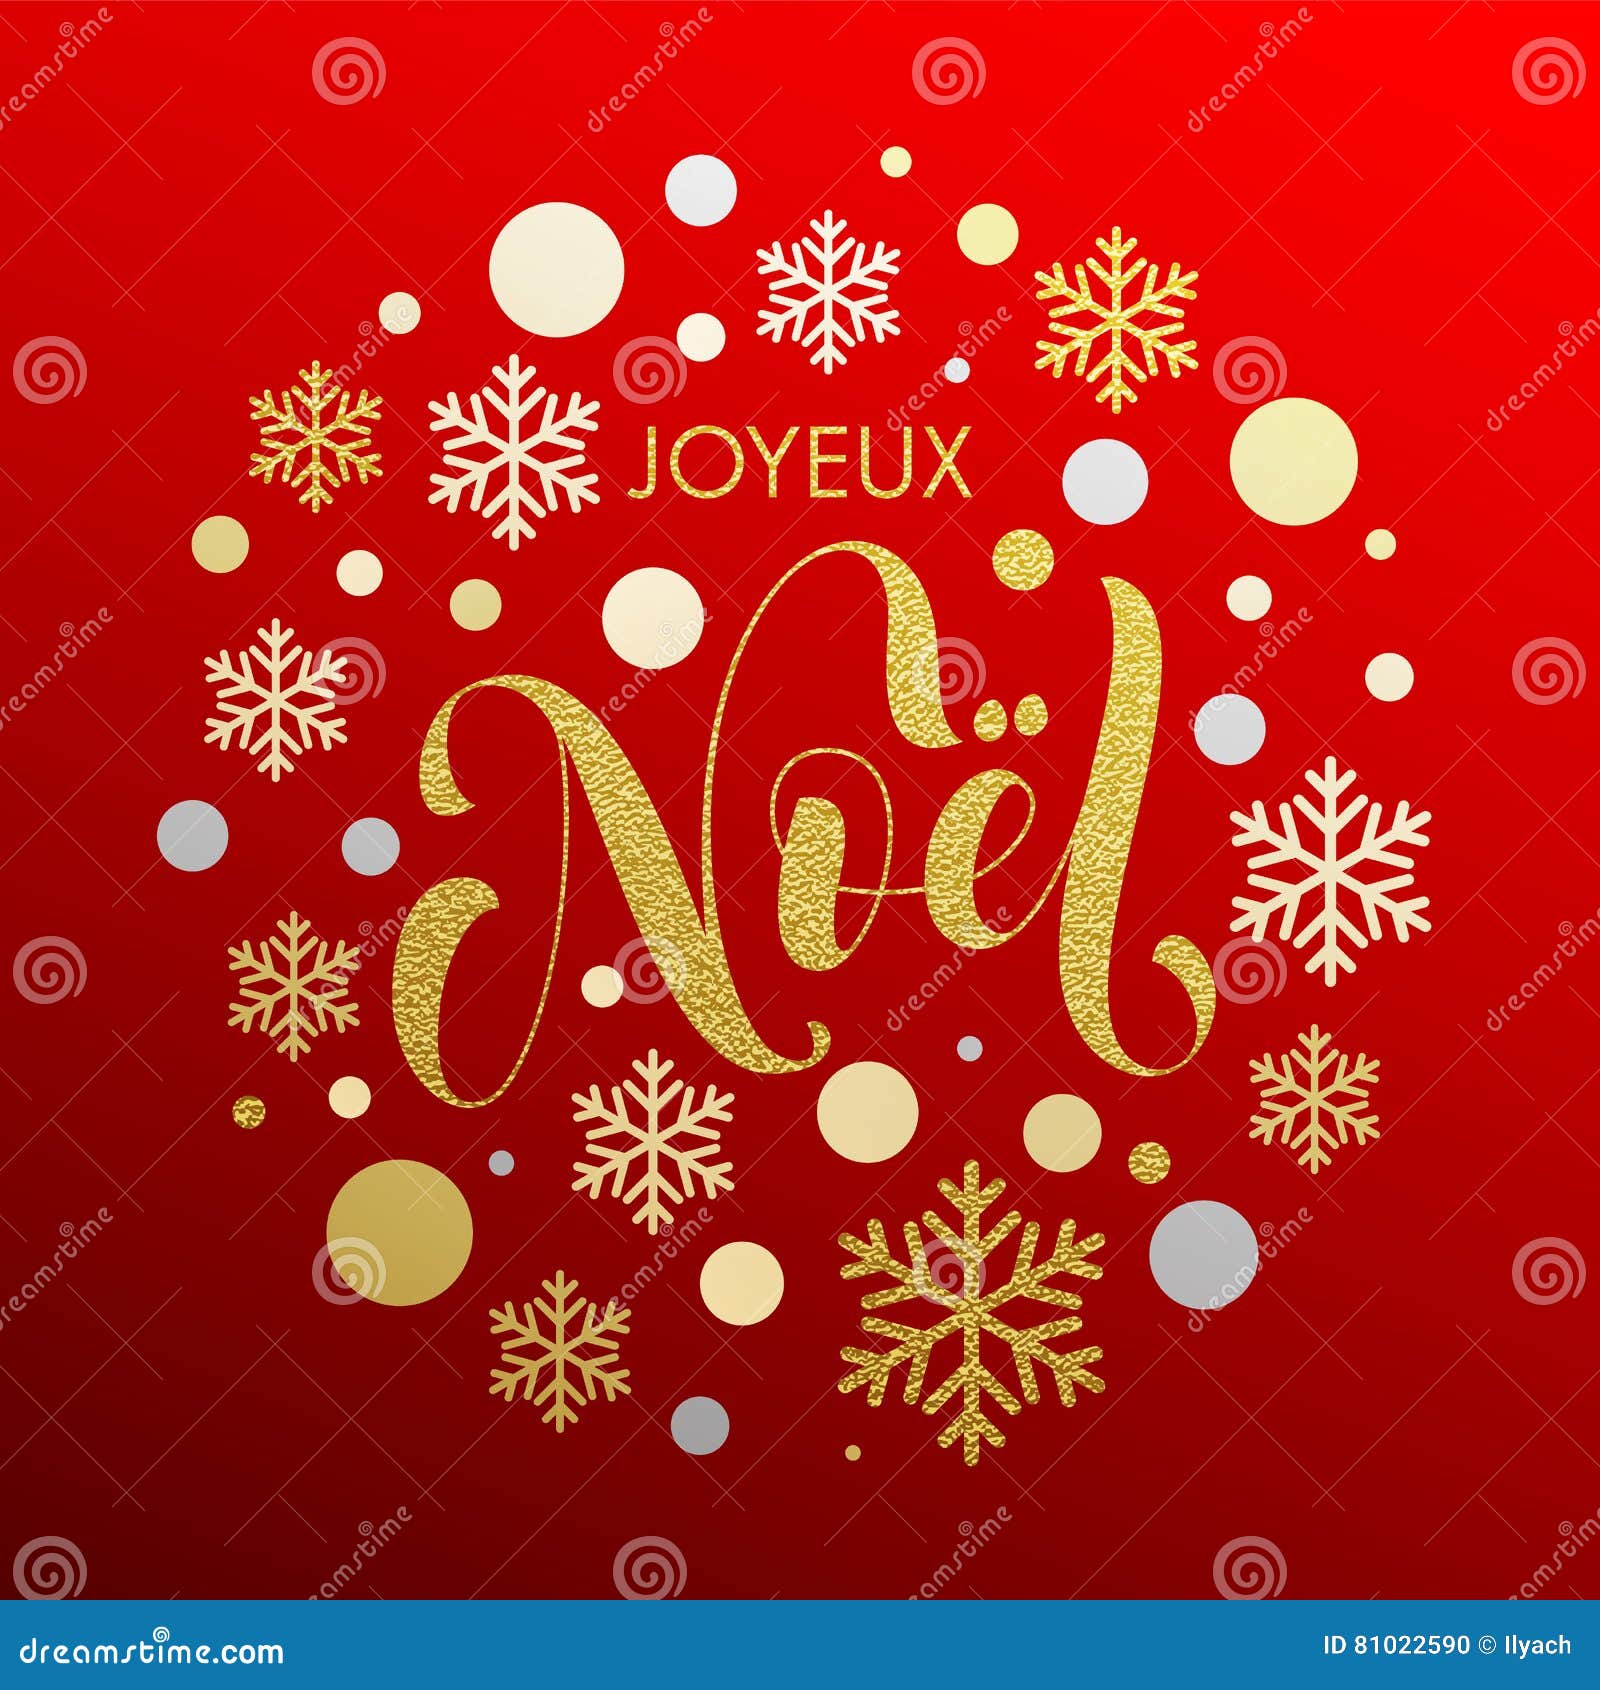 Il Natale In Francese Joyeux Noel Manda Un Sms A Per La Cartolina D Auguri Illustrazione Di Stock Illustrazione Di Arte Calligraphy